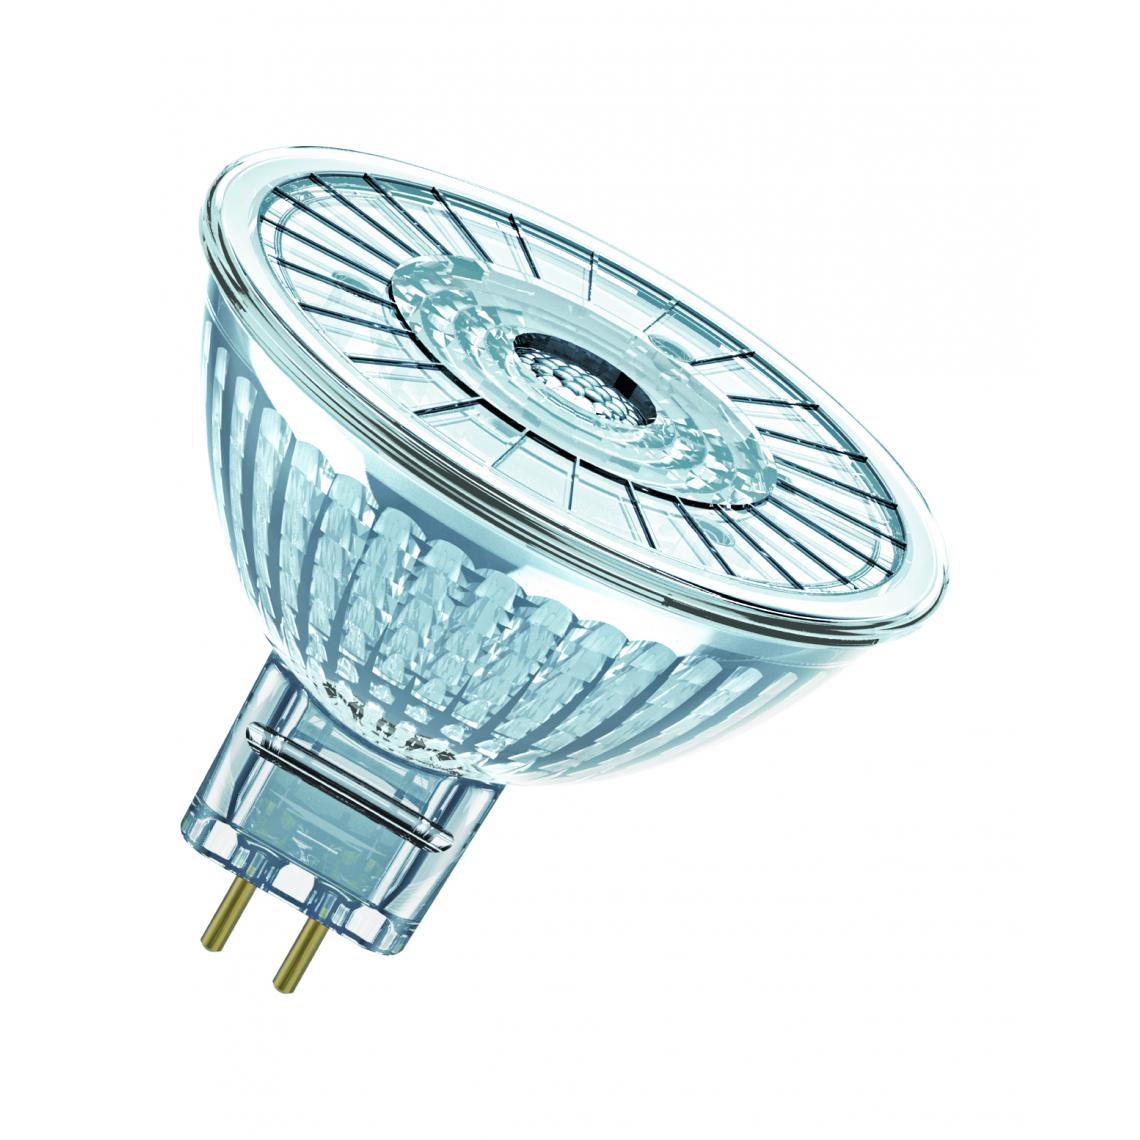 Osram - ampoule à led - osram parathom - gu5.3 - 3.8w - 3000k - 350 lm - mr16 - osram 431218 - Ampoules LED